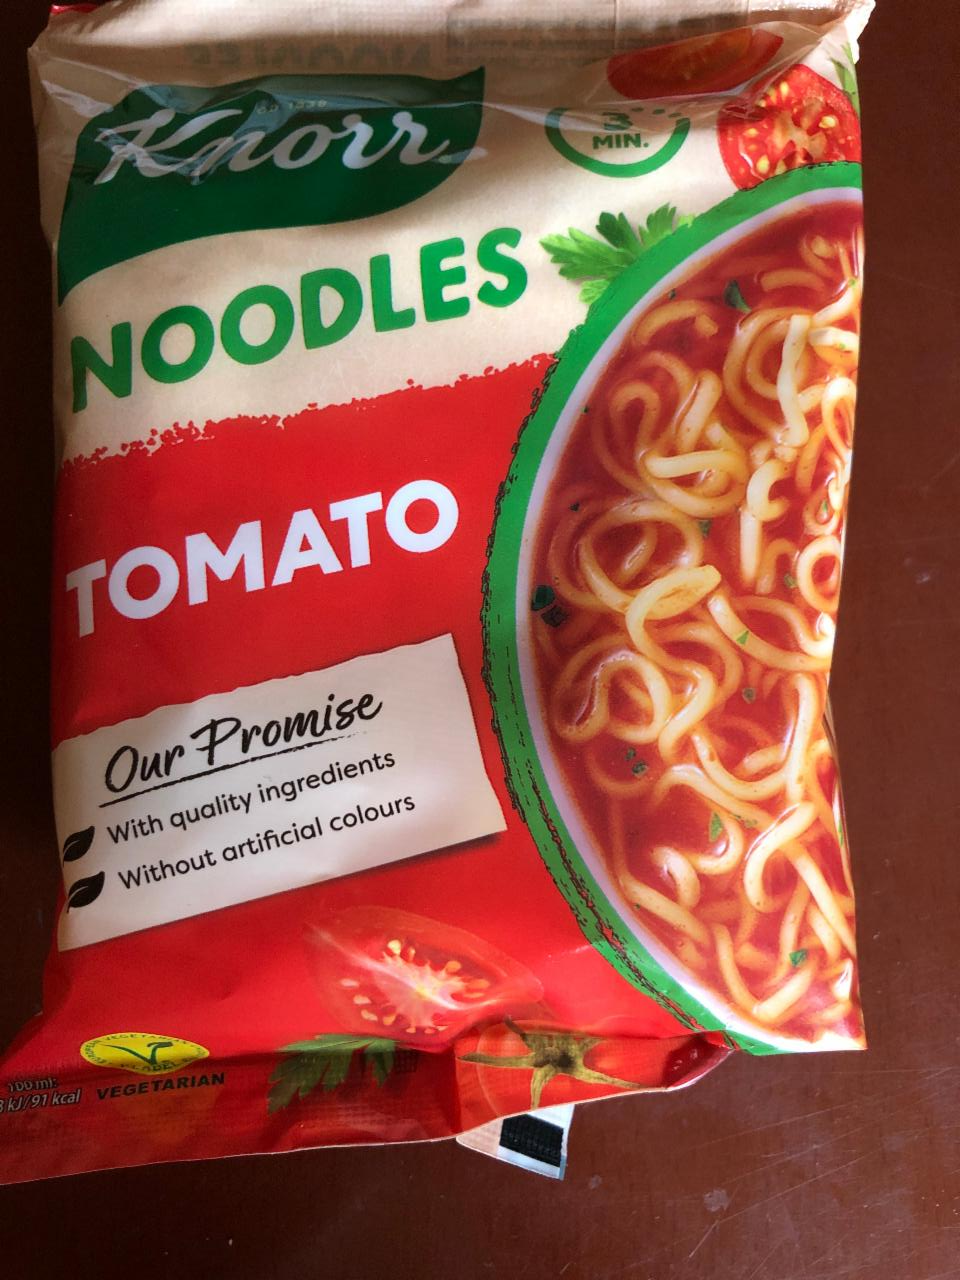 Képek - Knorr Noodles paradicsomos instant tészta 65 g